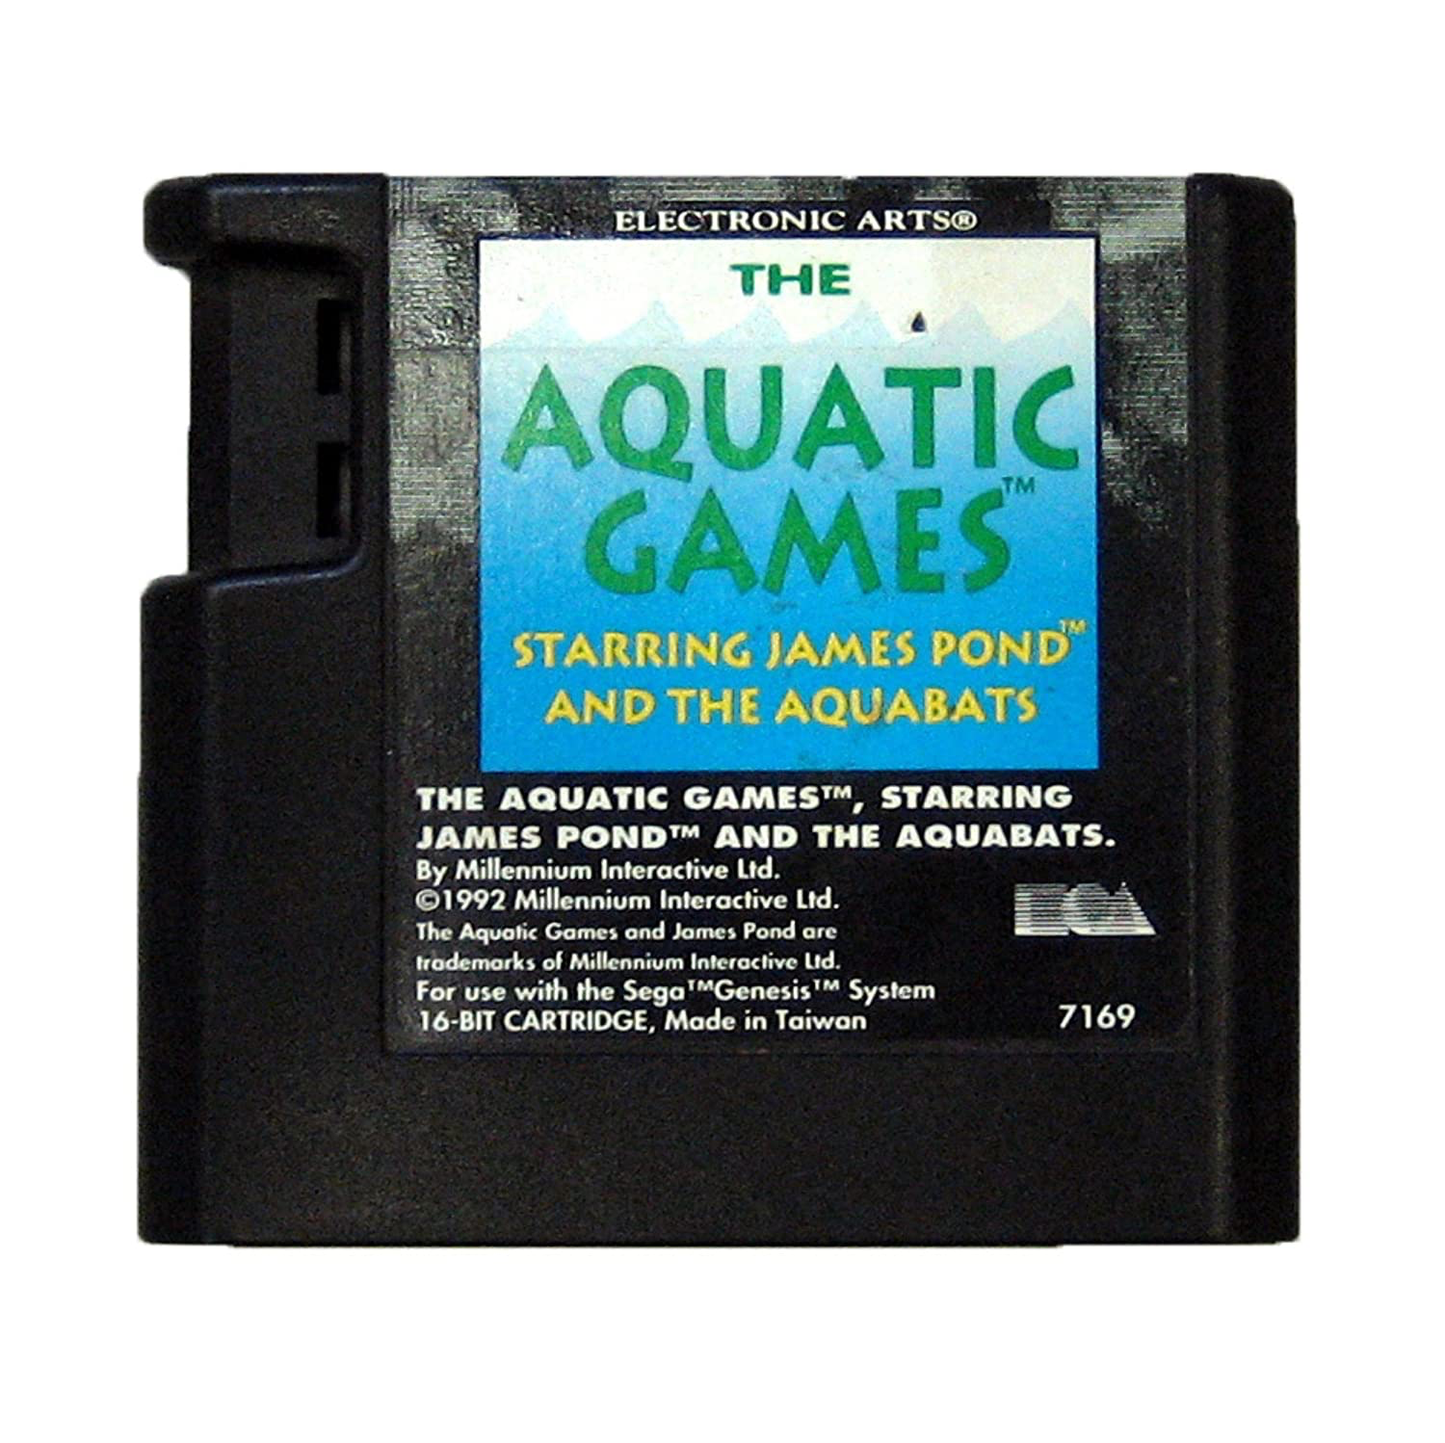 Aquatic Games The Starring James Pond and the Aquabats - Genesis